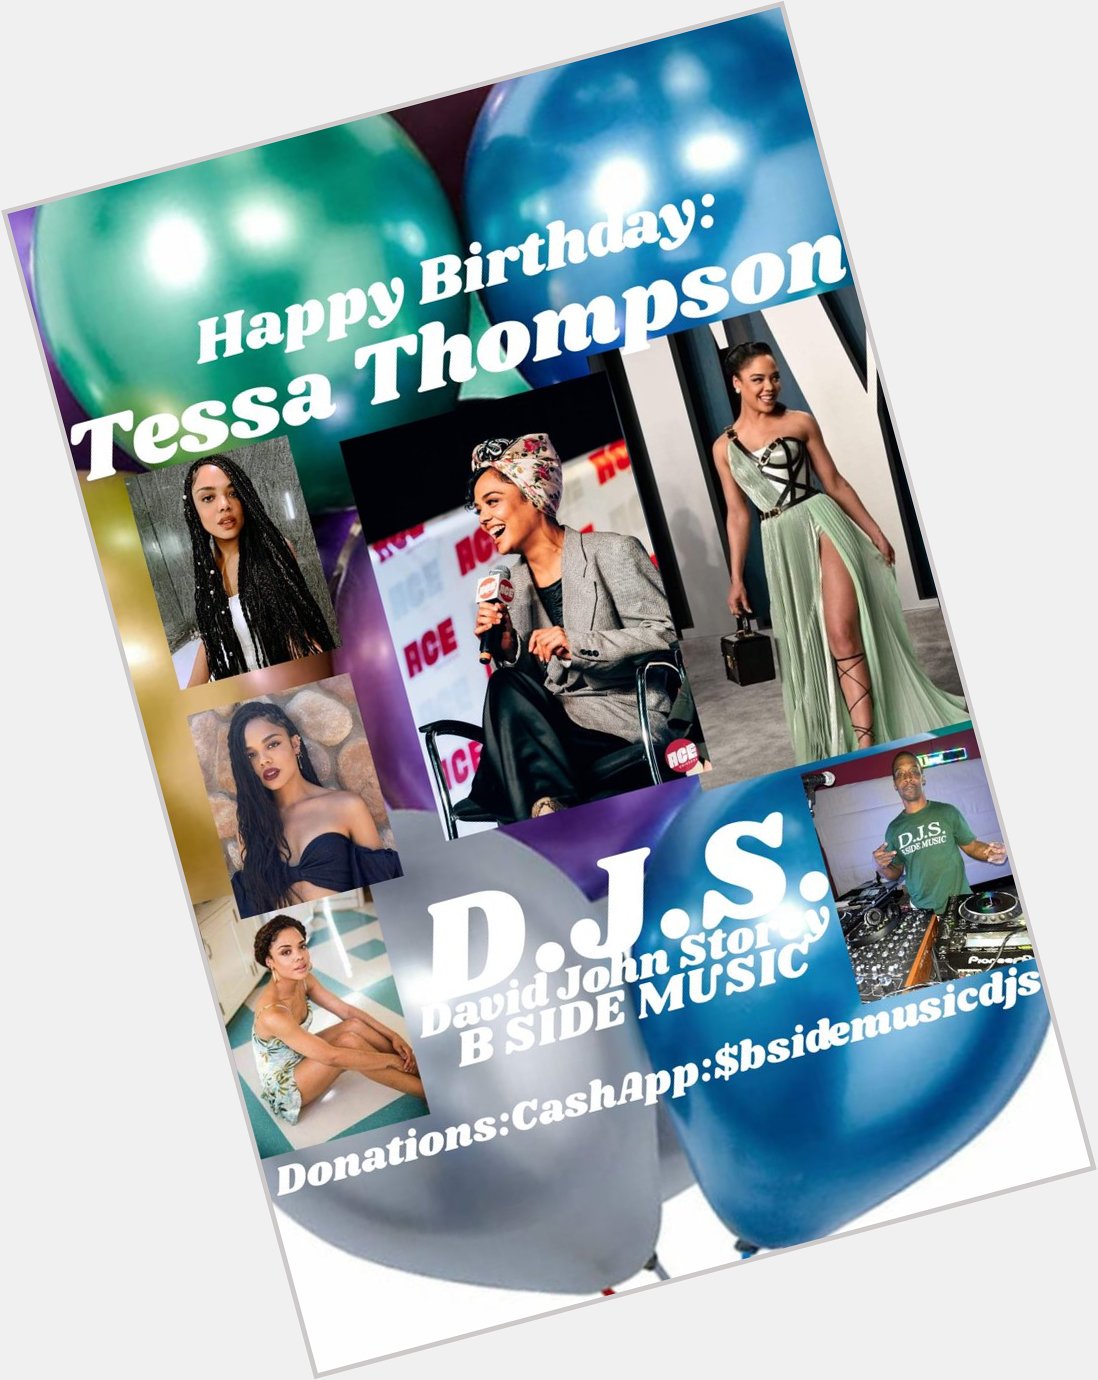 I(D.J.S.) wish Actress: \"TESSA THOMPSON\" Happy Birthday!!! 